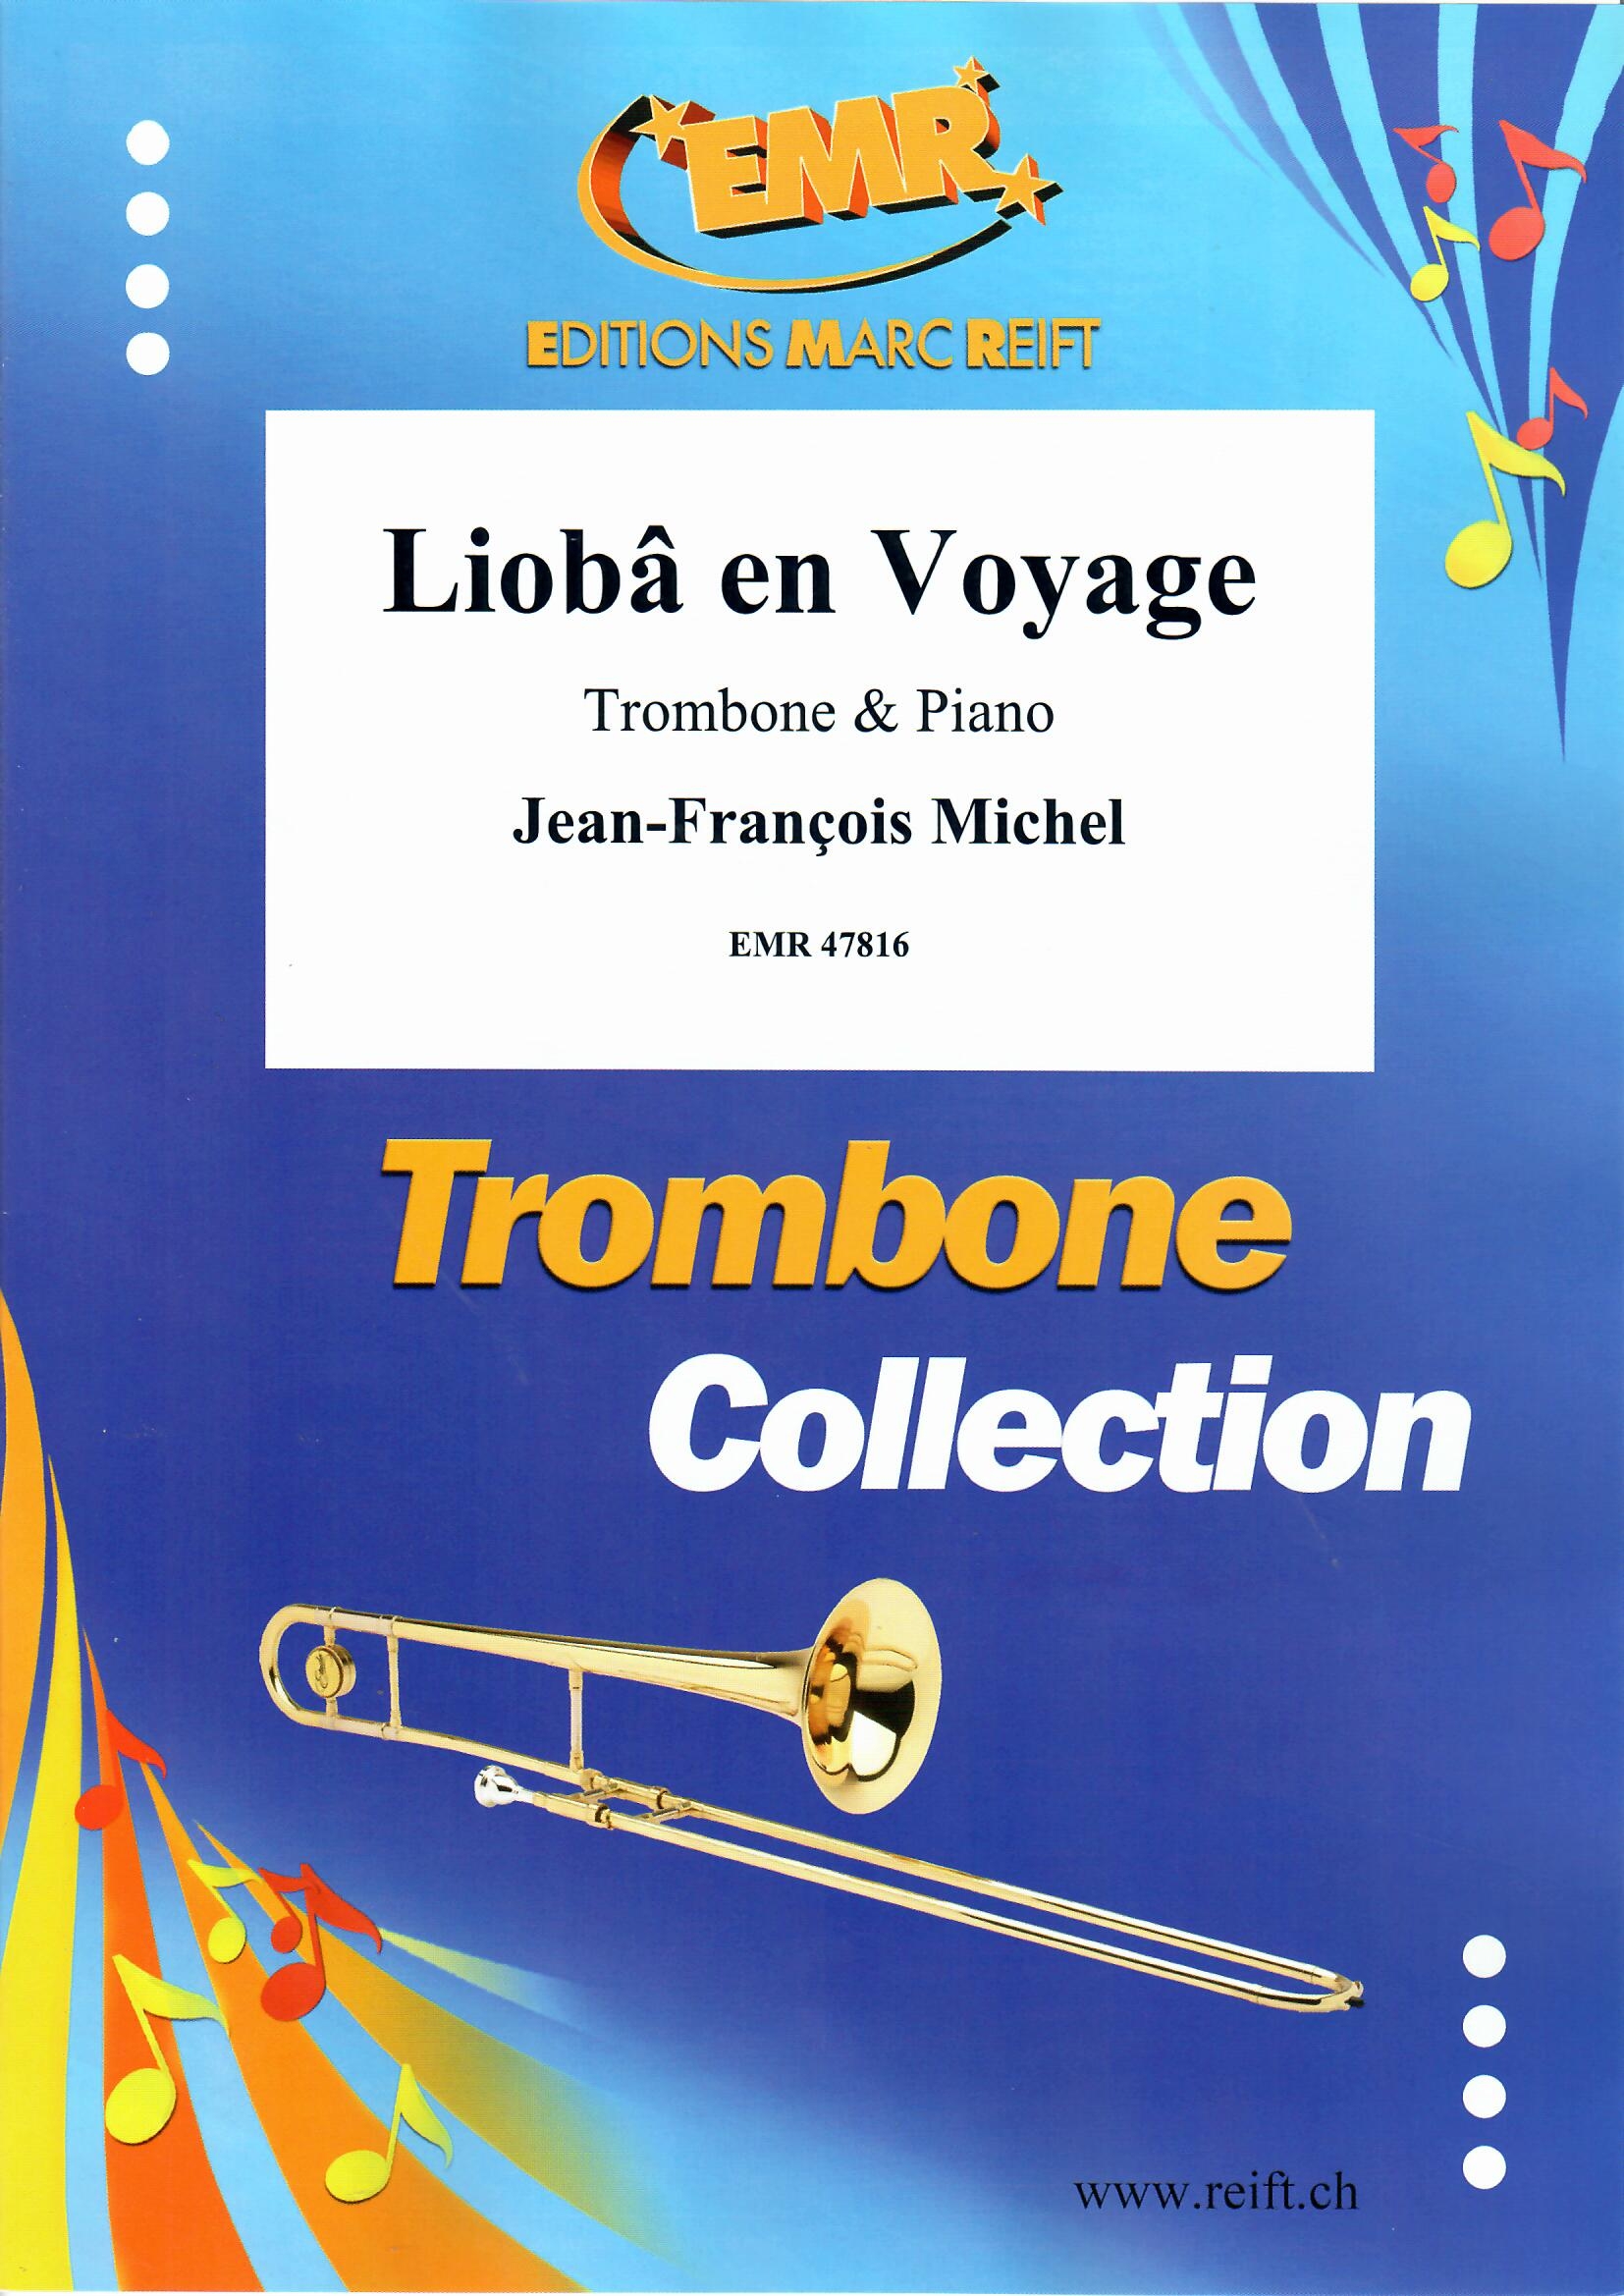 LIOBâ EN VOYAGE - Trombone & Piano, SOLOS - Trombone